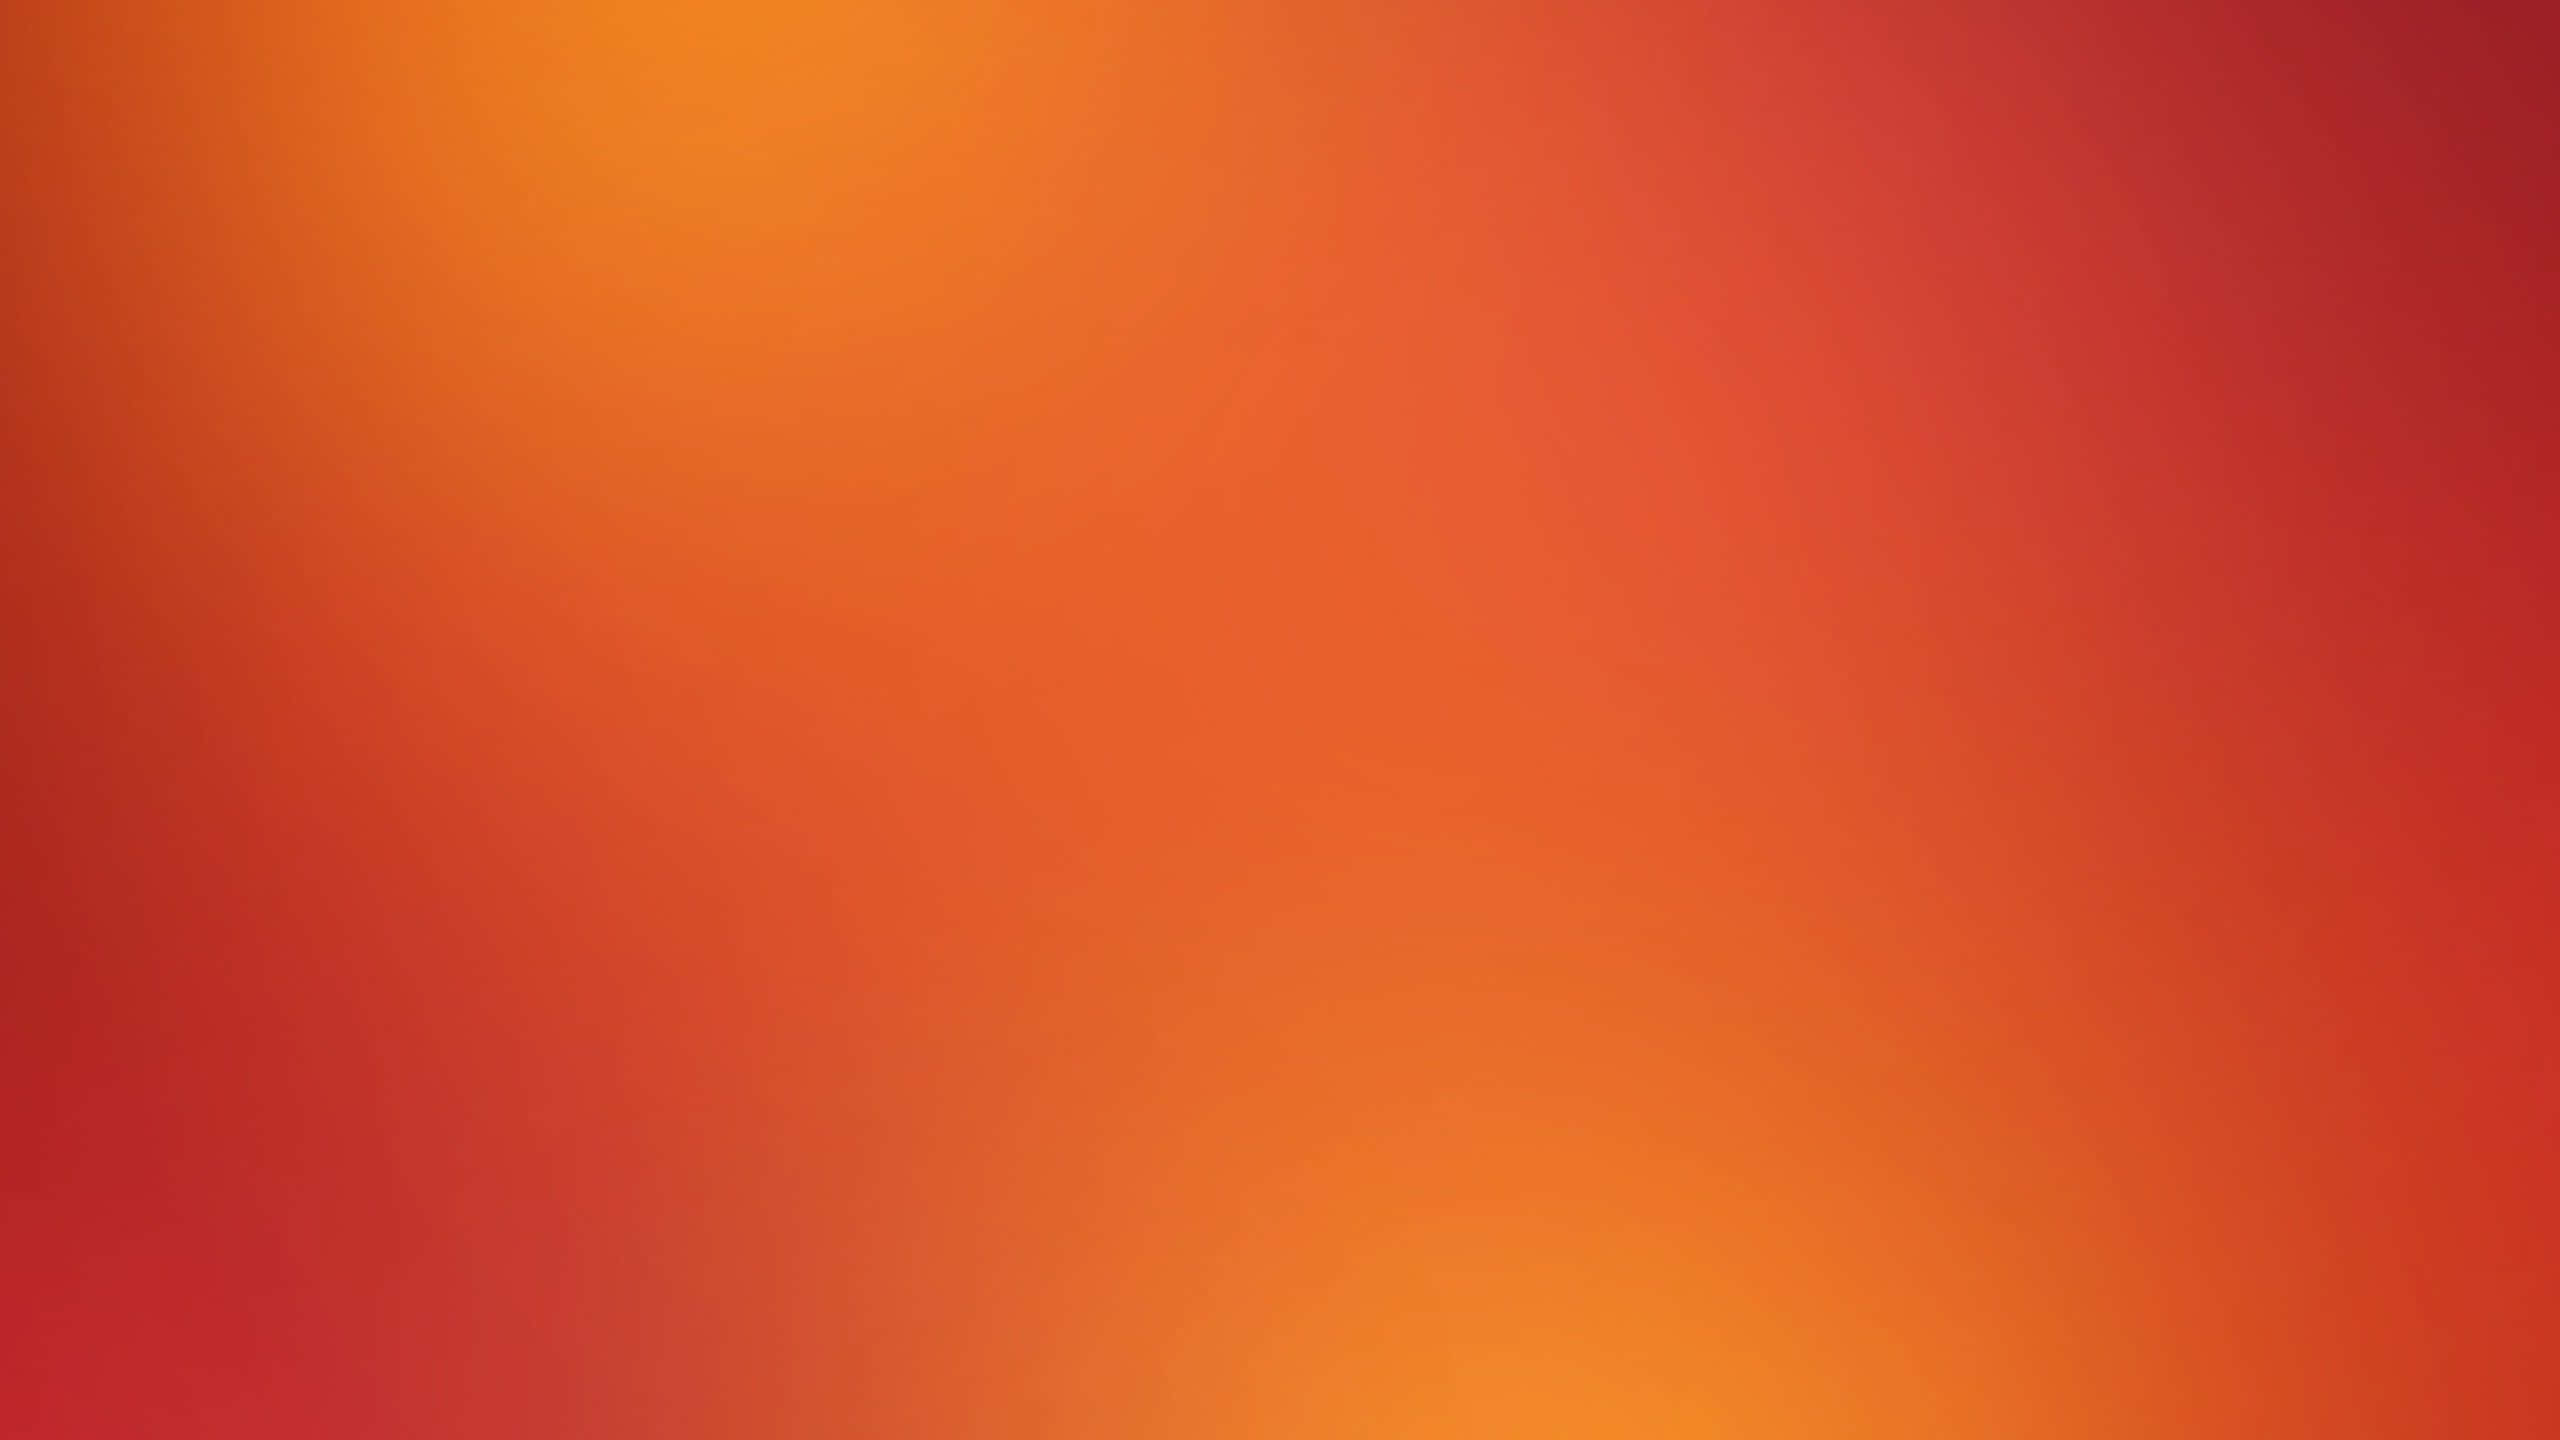 Shiny Orange Abstract Art Background